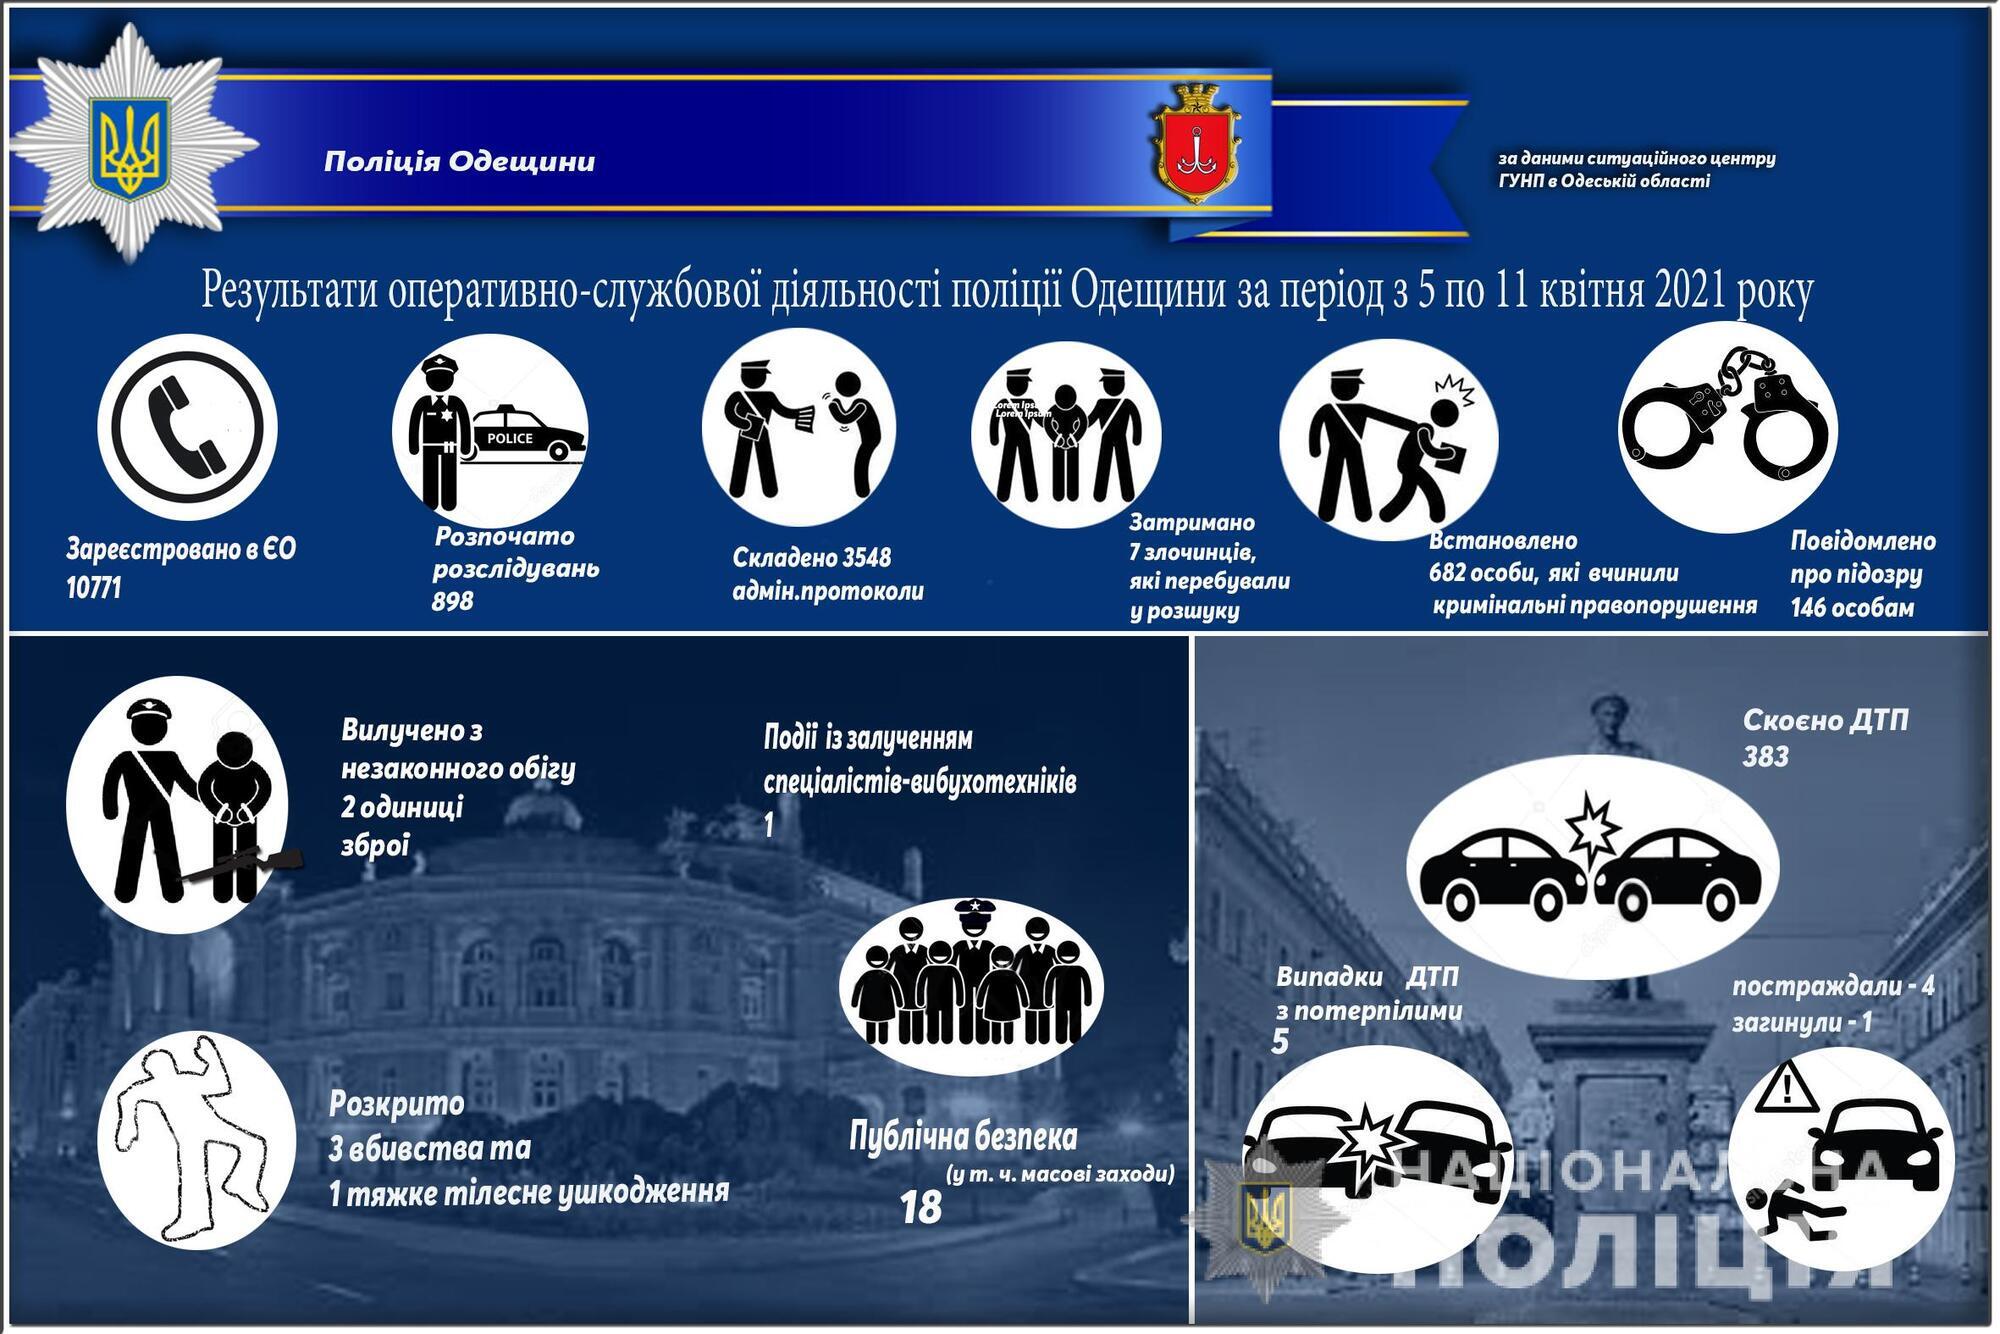 Результати оперативно-службової діяльності поліції Одещини за період з 5 по 11 квітня 2021 року